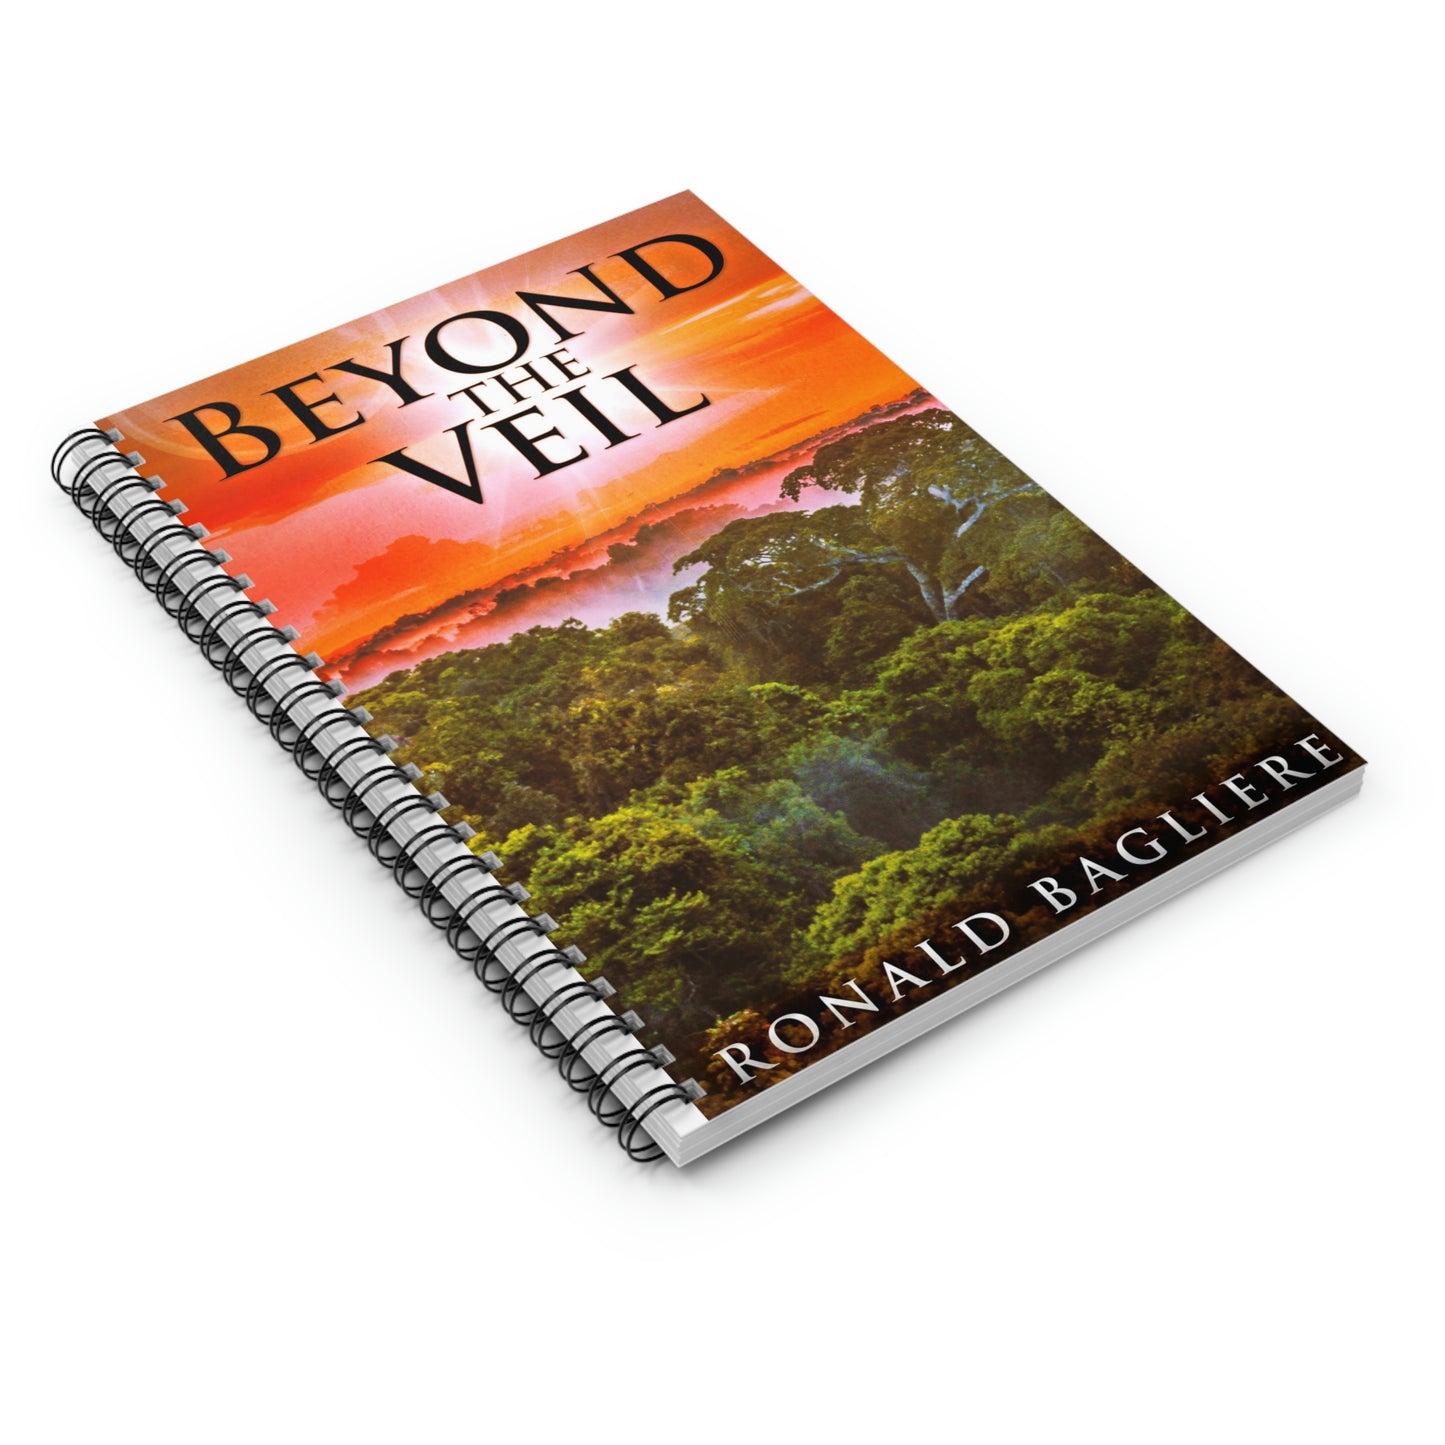 Beyond The Veil - Spiral Notebook